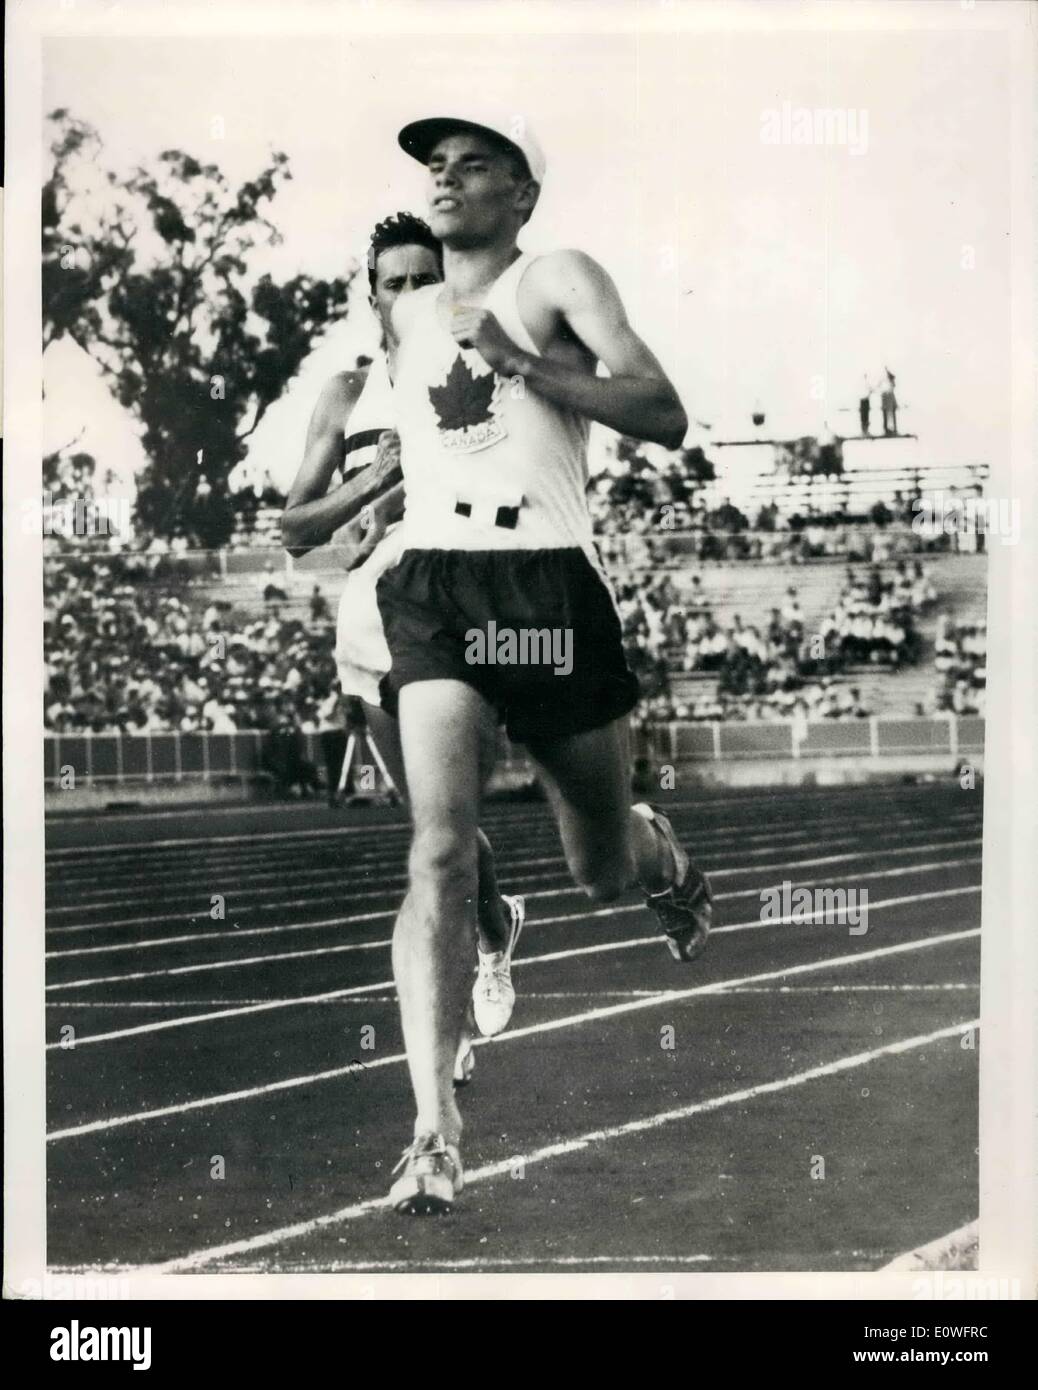 11 novembre 1962 - Canadian remporte six milles à l'événement : Perth Photo montre portant une casquette blanche, Bruce Kidd, du Canada, franchit la ligne à l'étain l'événement de six milles à l'Empire britannique et du Commonwealth à Perth, dans le temps record de 28 minutes. seocnds 26,6 Banque D'Images